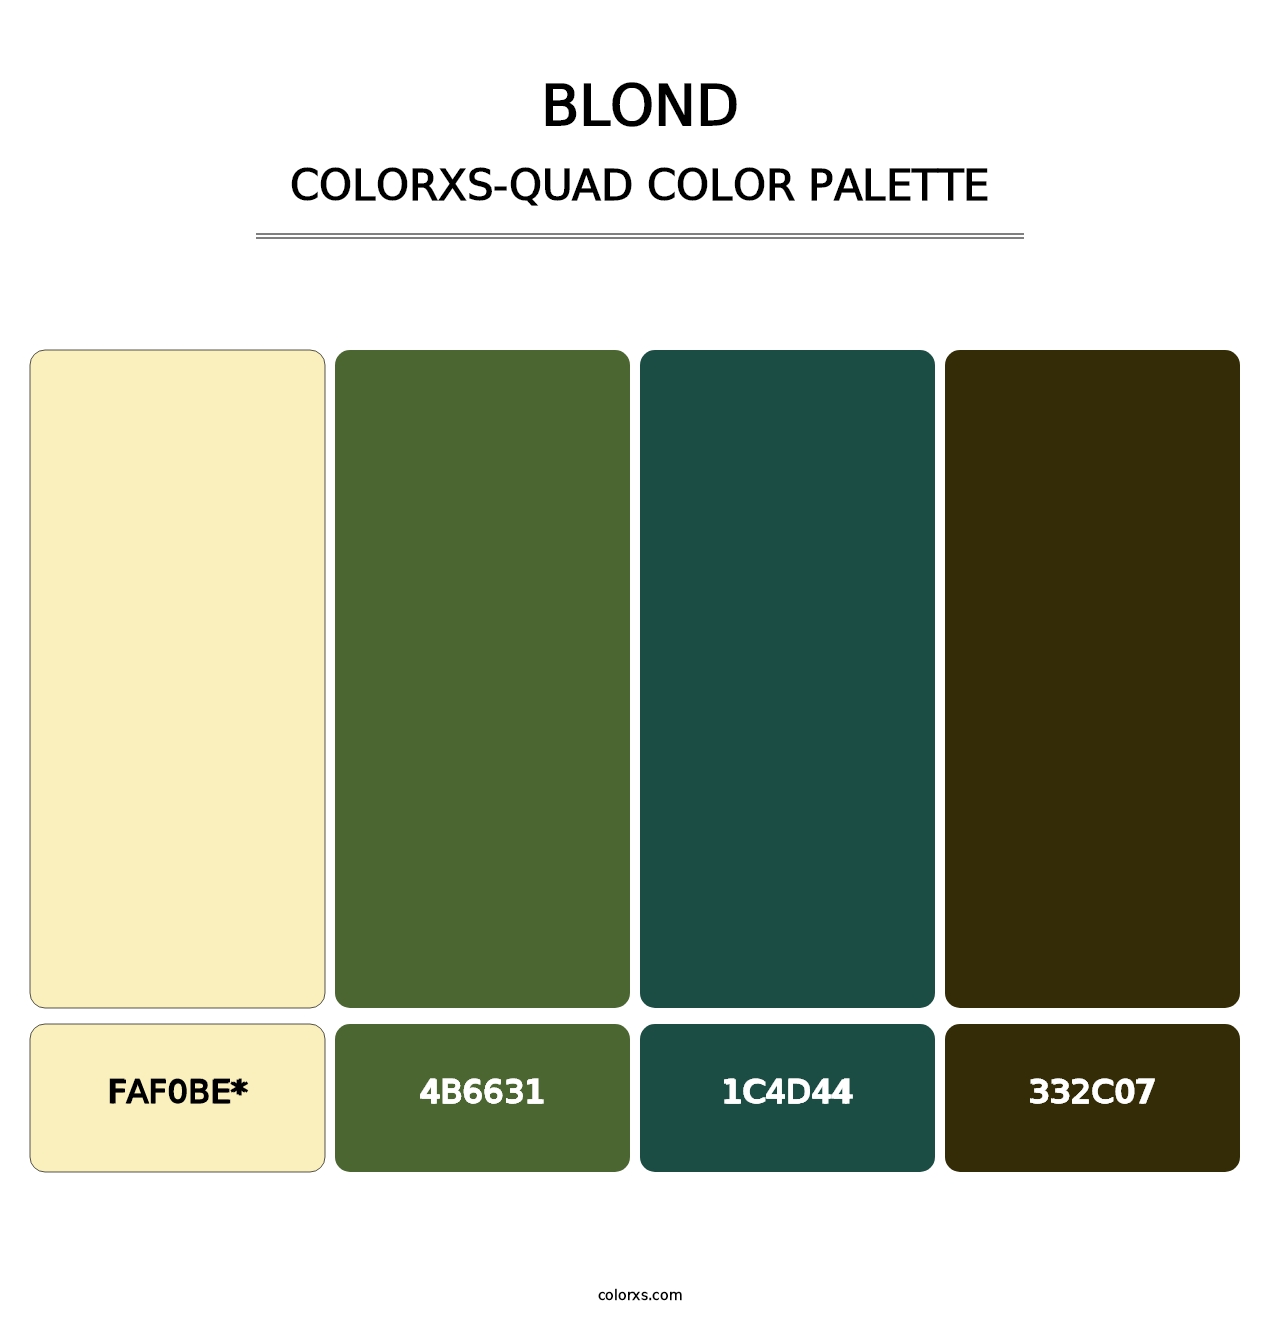 Blond - Colorxs Quad Palette